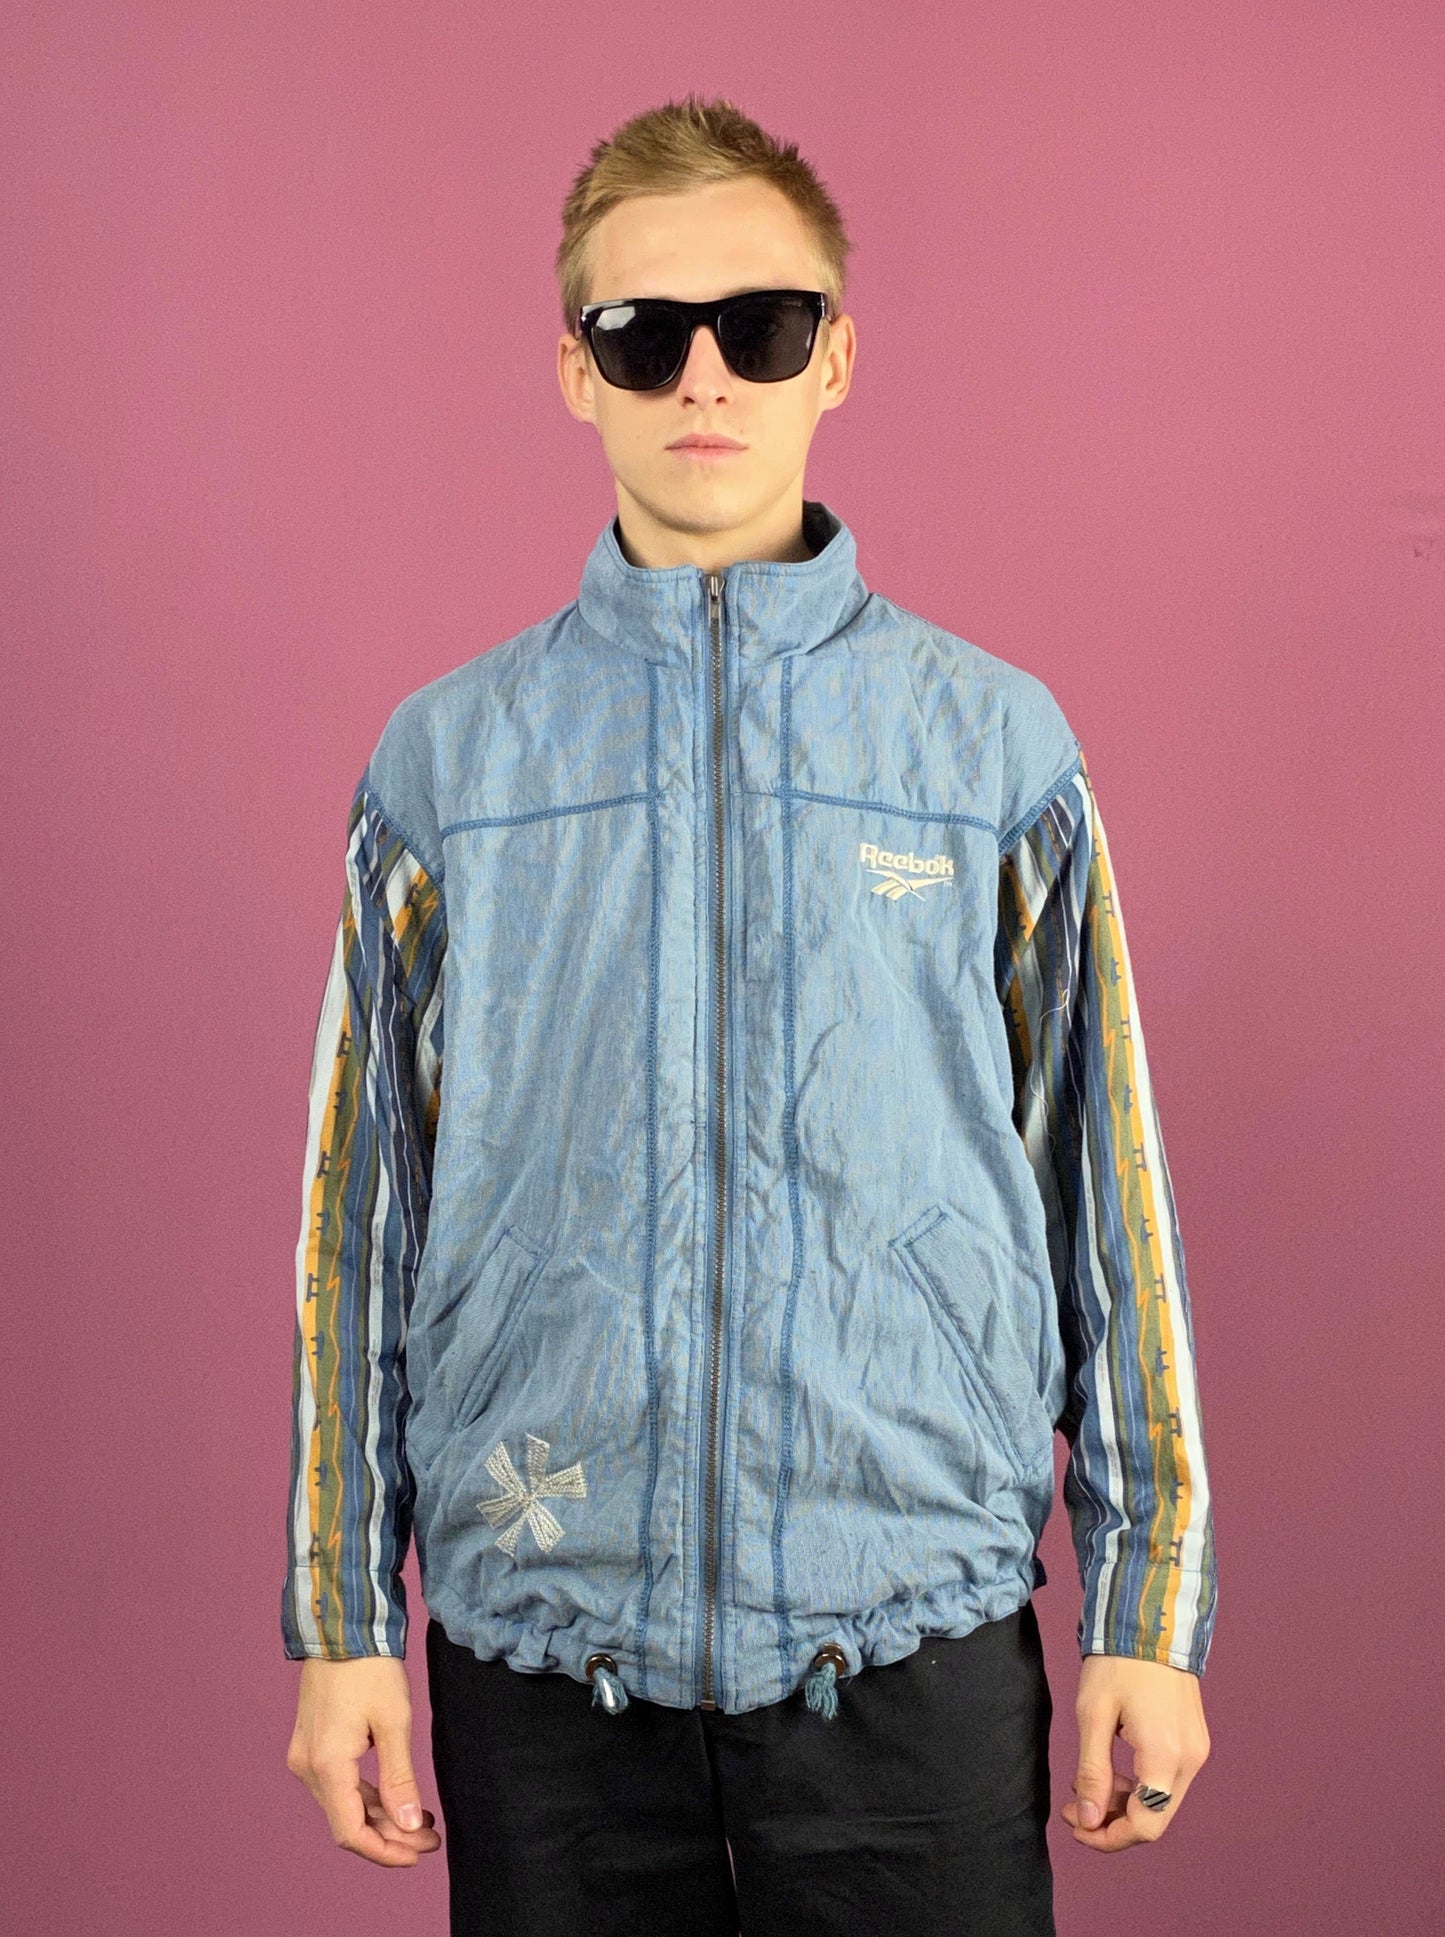 90s Reebok Vintage Men's Track Jacket - Medium Blue Nylon Blend